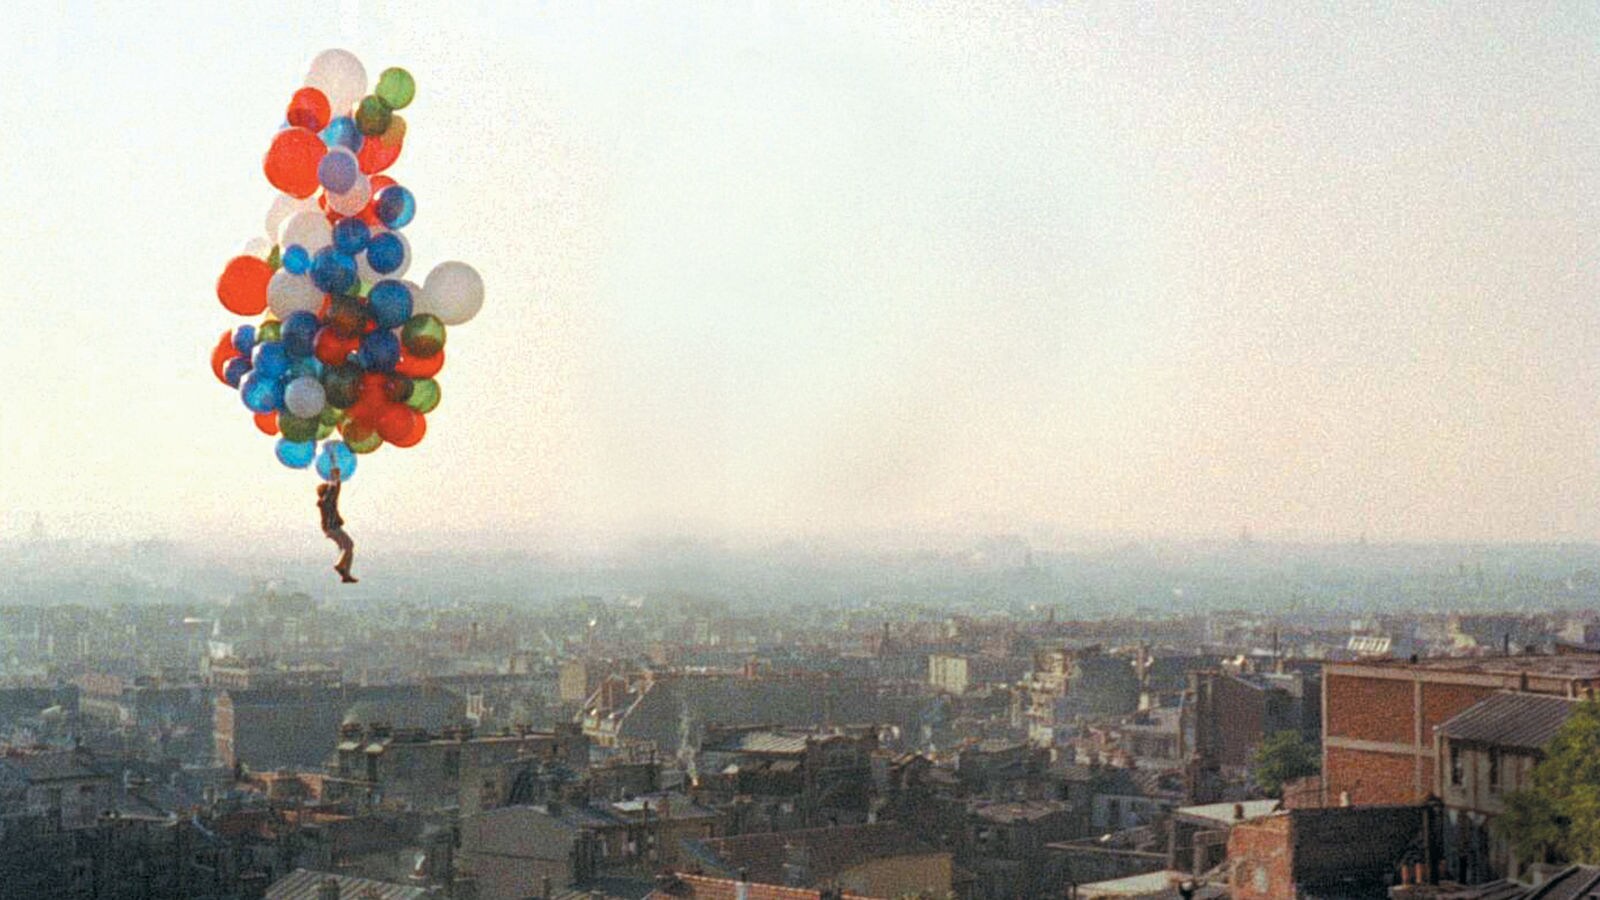 Anda akan senang berlarian atau melayang bersama balon dalam karya fotografer jalanan Vivian Maier